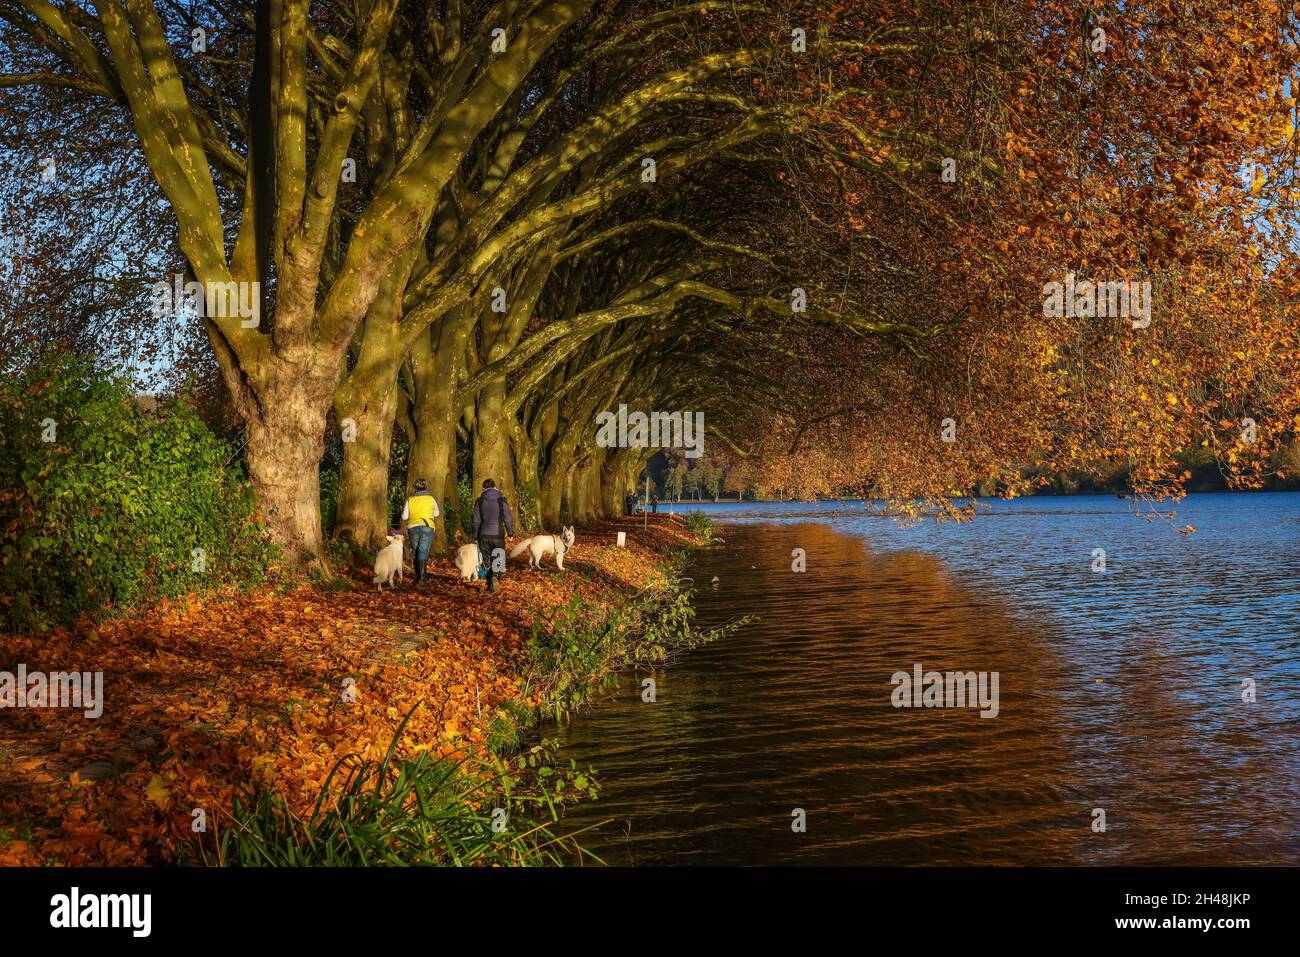 Essen, Renania settentrionale-Vestfalia, Germania - i proprietari di cani camminano sulla riva del lago sotto gli alberi con foglie autunnali. Autunno d'oro a Baldeneysee. Foto Stock